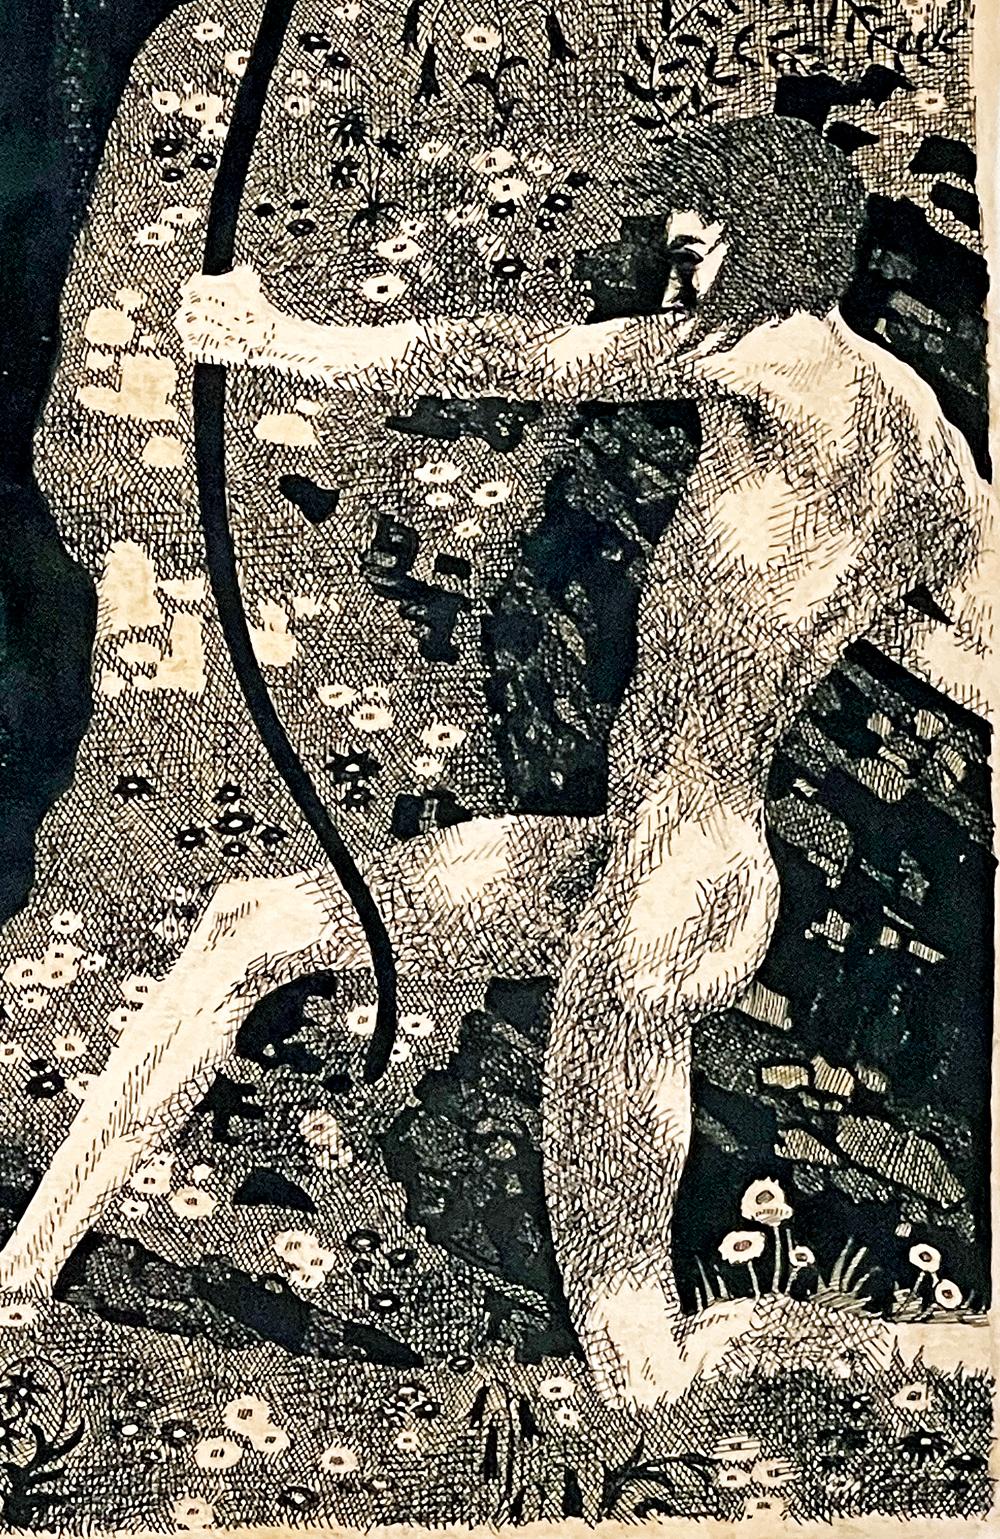 Diese kühne und stimmungsvolle Tuschezeichnung zeigt einen knienden männlichen Akt, der seinen Bogen spannt und seinen Pfeil zum Abschuss bereithält, umgeben von einer blumengeschmückten Landschaft, die sich eindeutig an Gustav Klimt orientiert. 